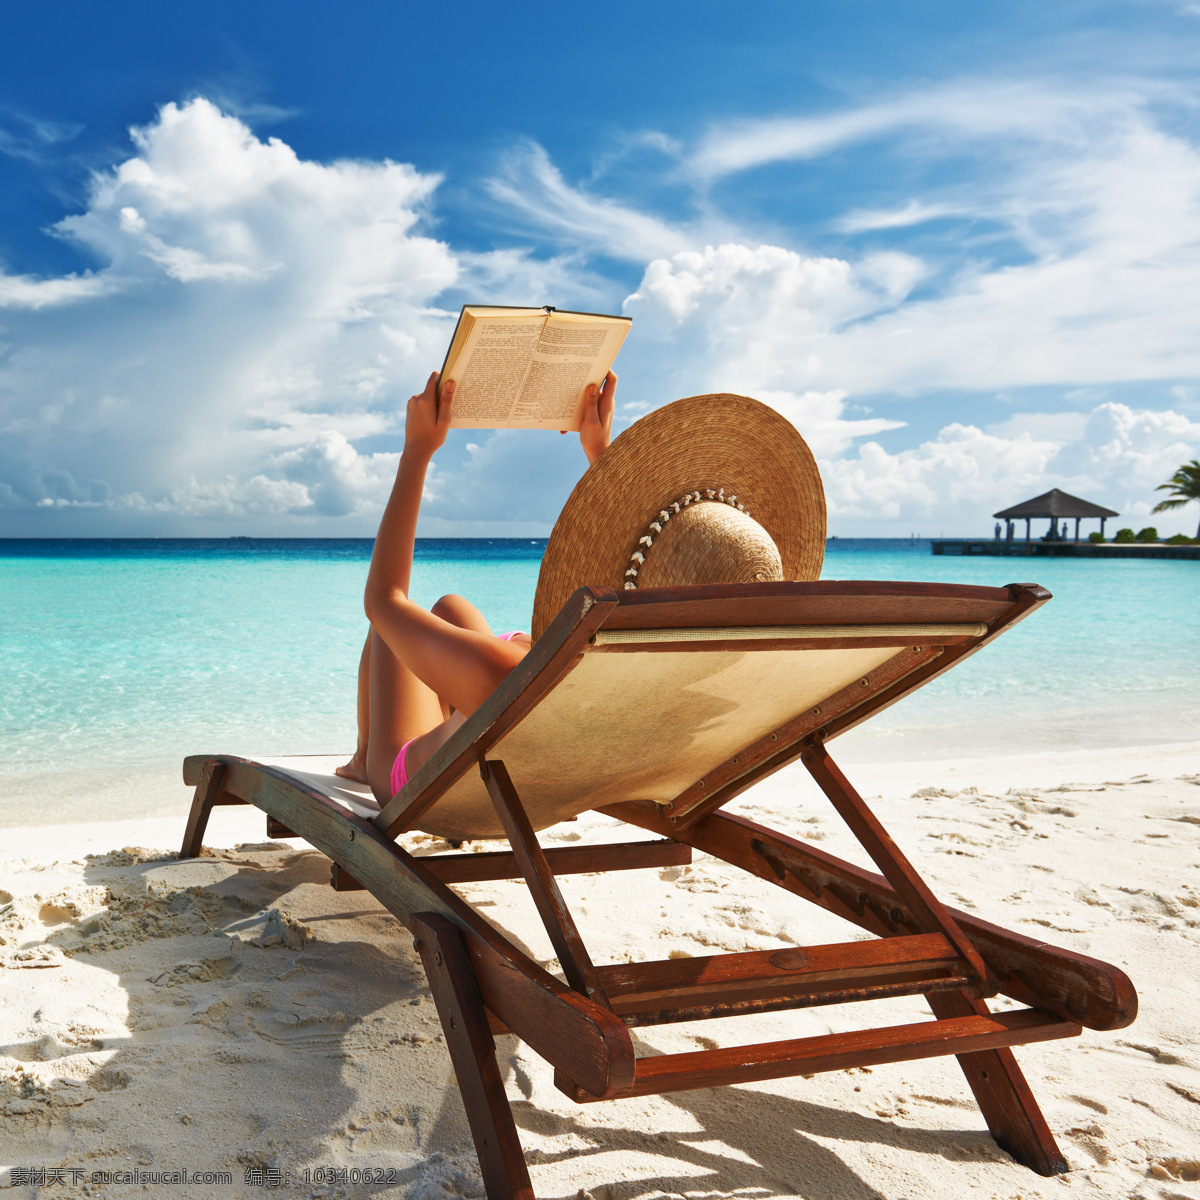 躺 休闲椅 上 看书 美女 书 大海 海边 海滩 沙滩 蓝色海水 蓝天白云 性感美女 妇人 海洋海边 自然景观 白色